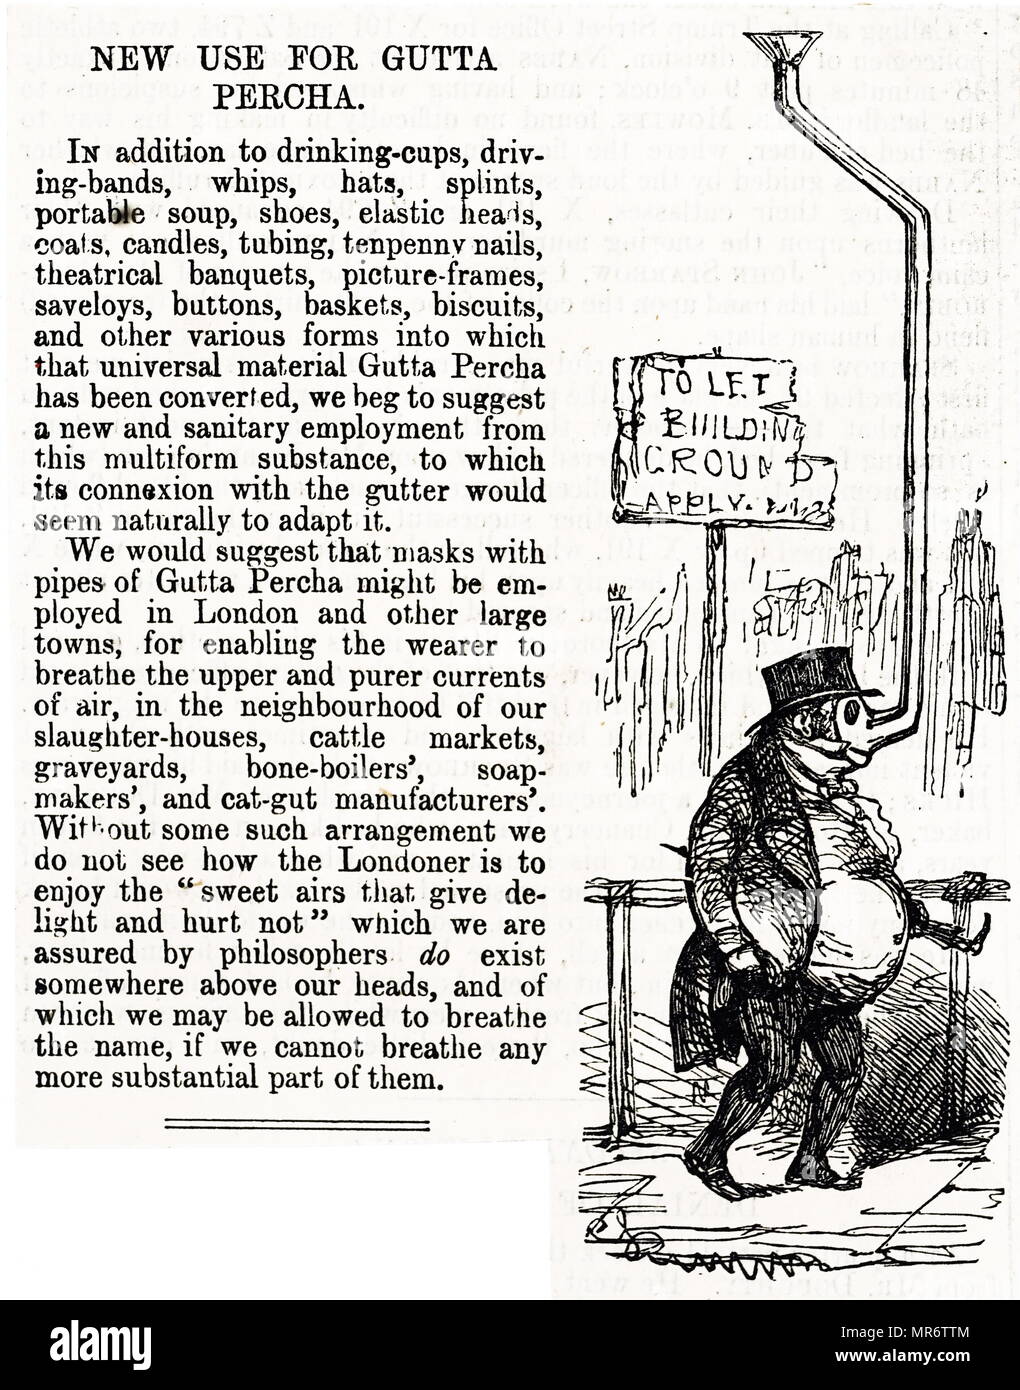 Artikel, die auf eine neue Verwendung für Gutta Percha (Gummi) auf der Annahme, dass die Luft über dem Kopf weniger verschmutzt war als die in der Nähe der Bürgersteig und Dachrinnen. Vom 19. Jahrhundert Stockfoto